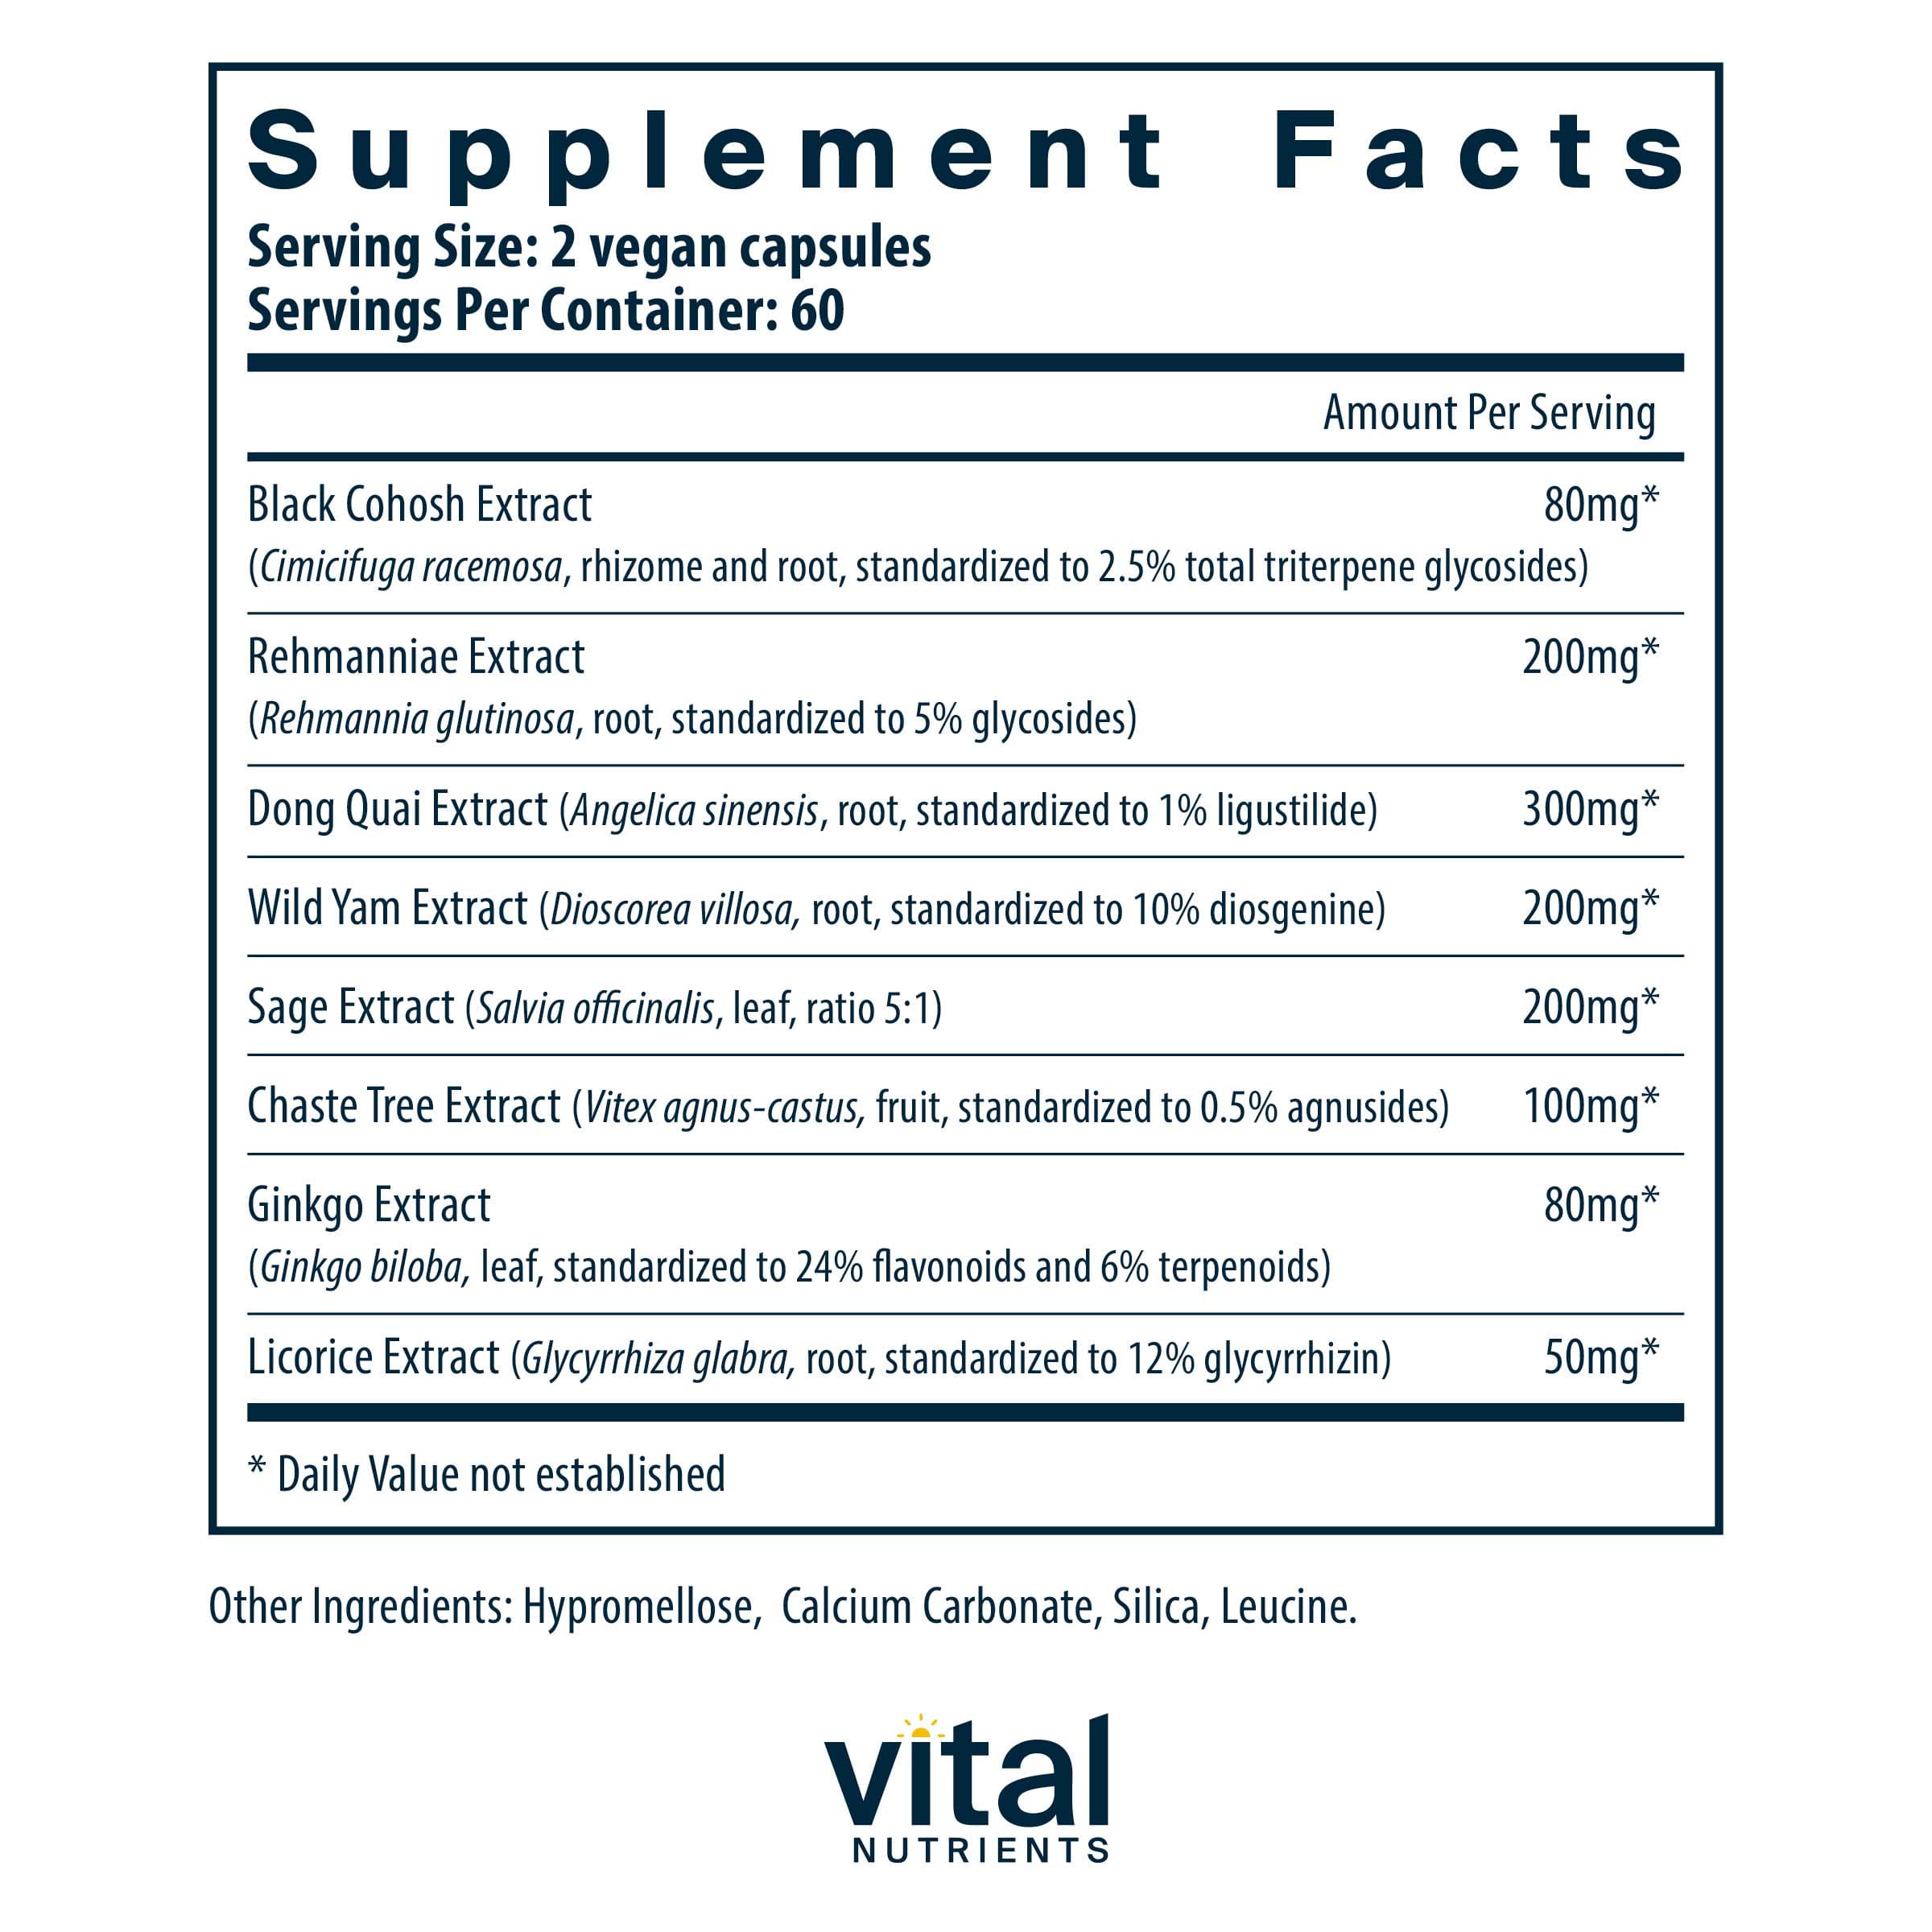 Vital Nutrients Menopause Support Ingredients